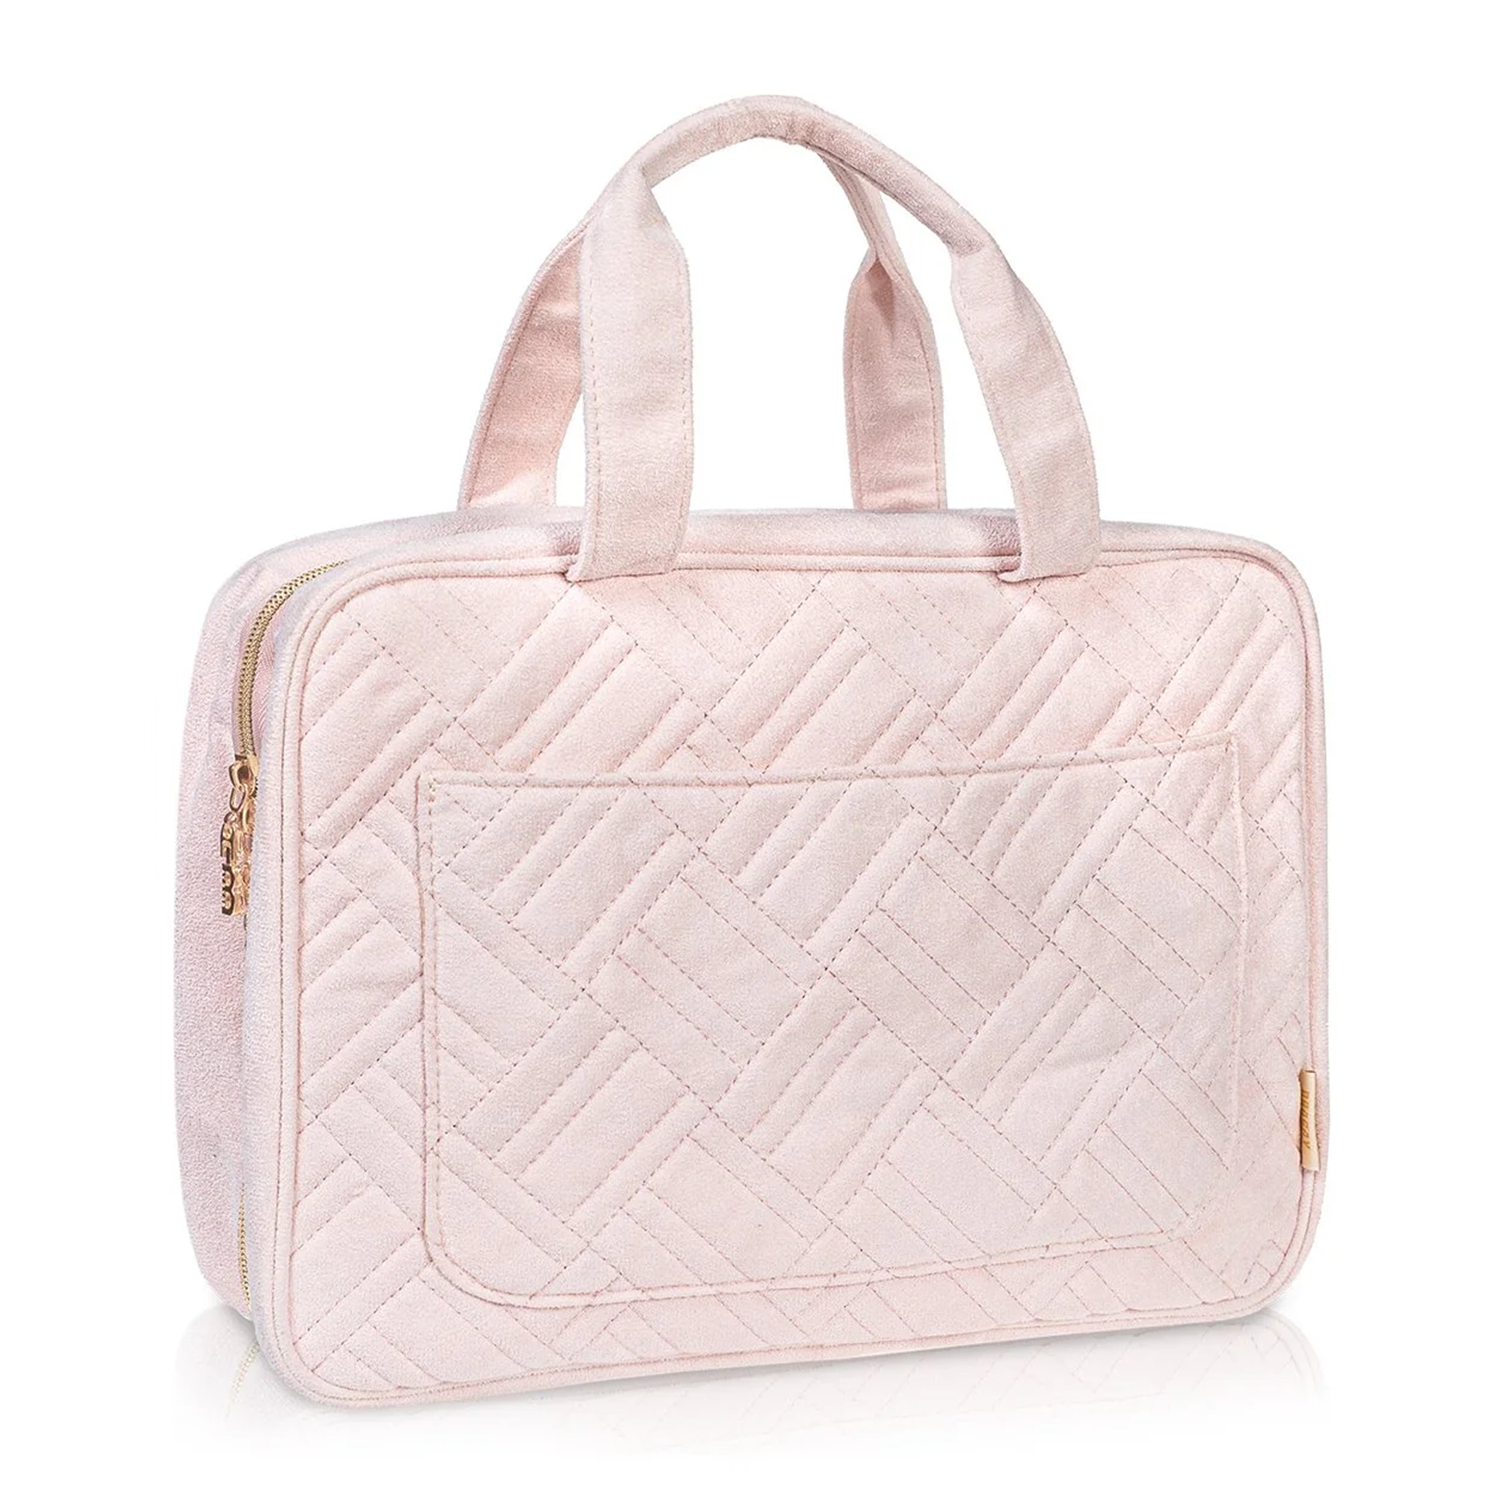 Foldable Travel Makeup Bags Women Waterproof Cosmetic Bag